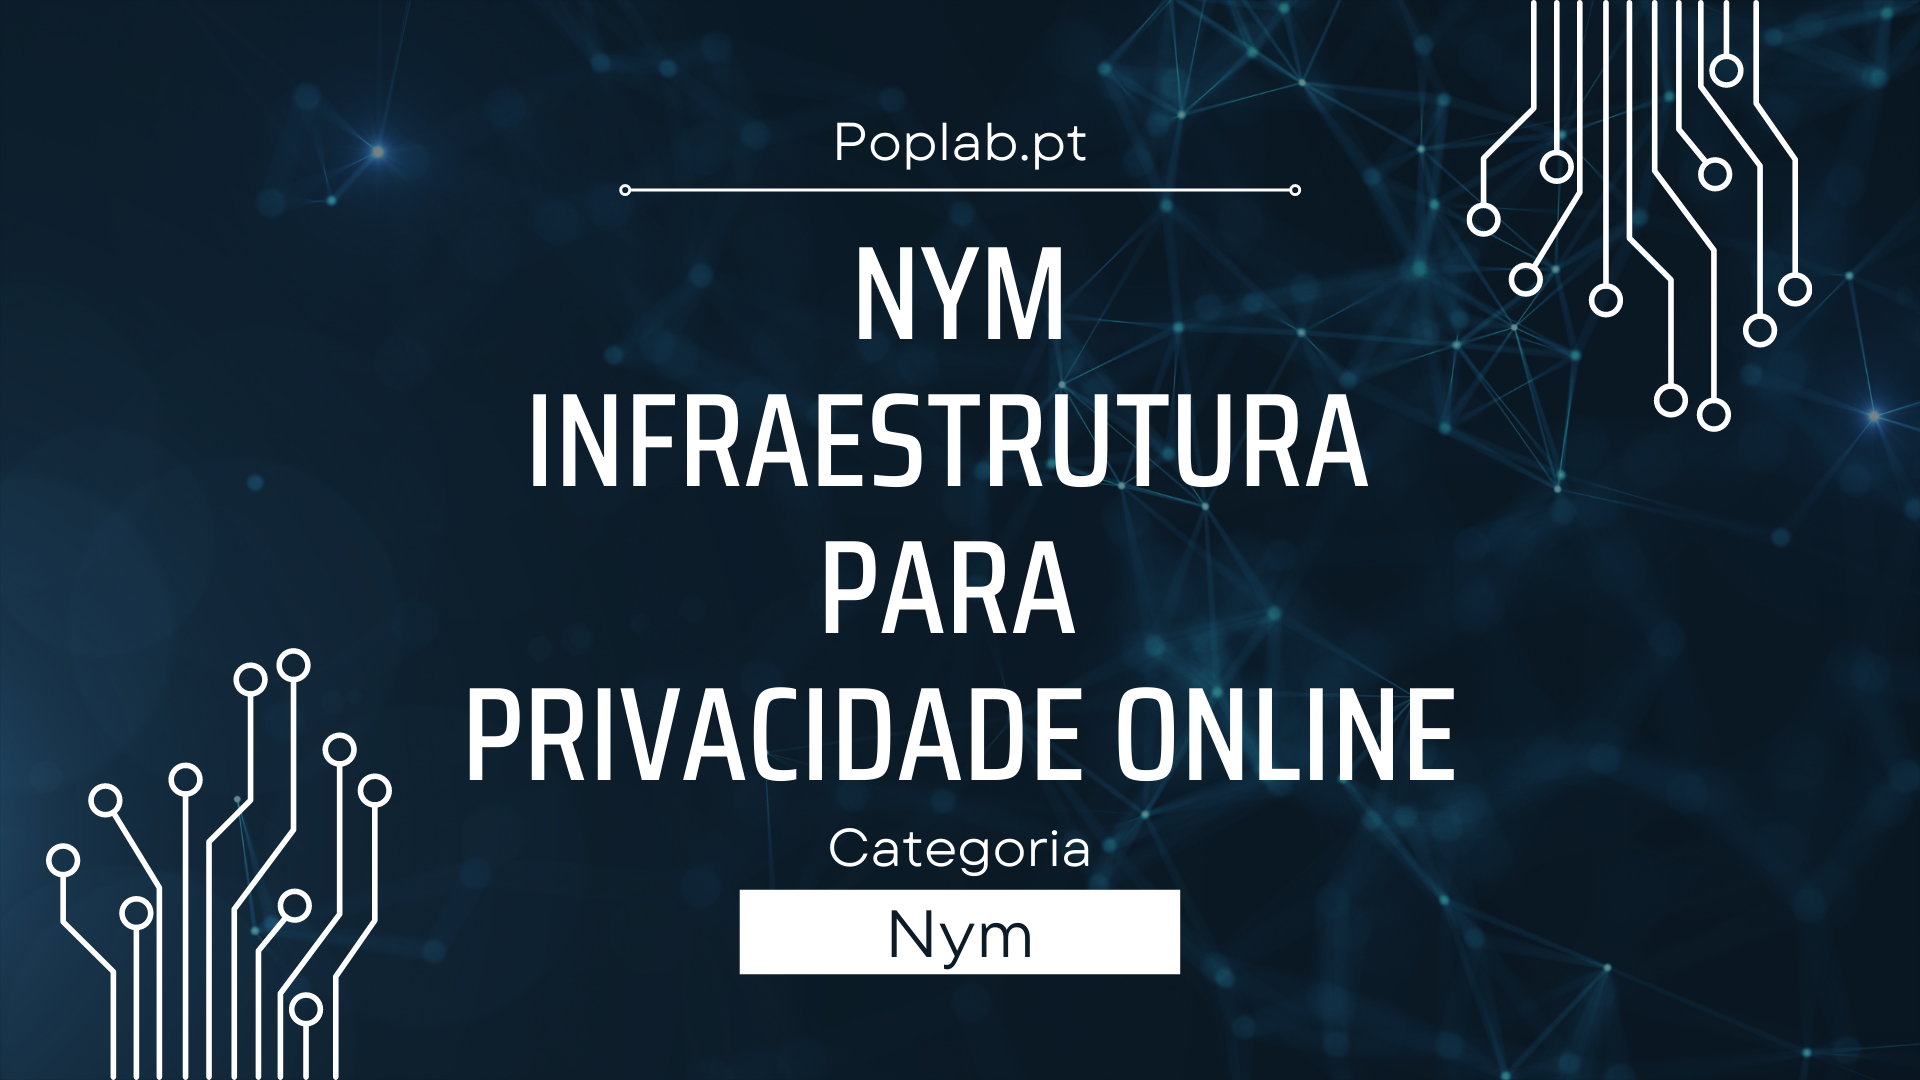 Nym Network: Infraestrutura para Privacidade Online